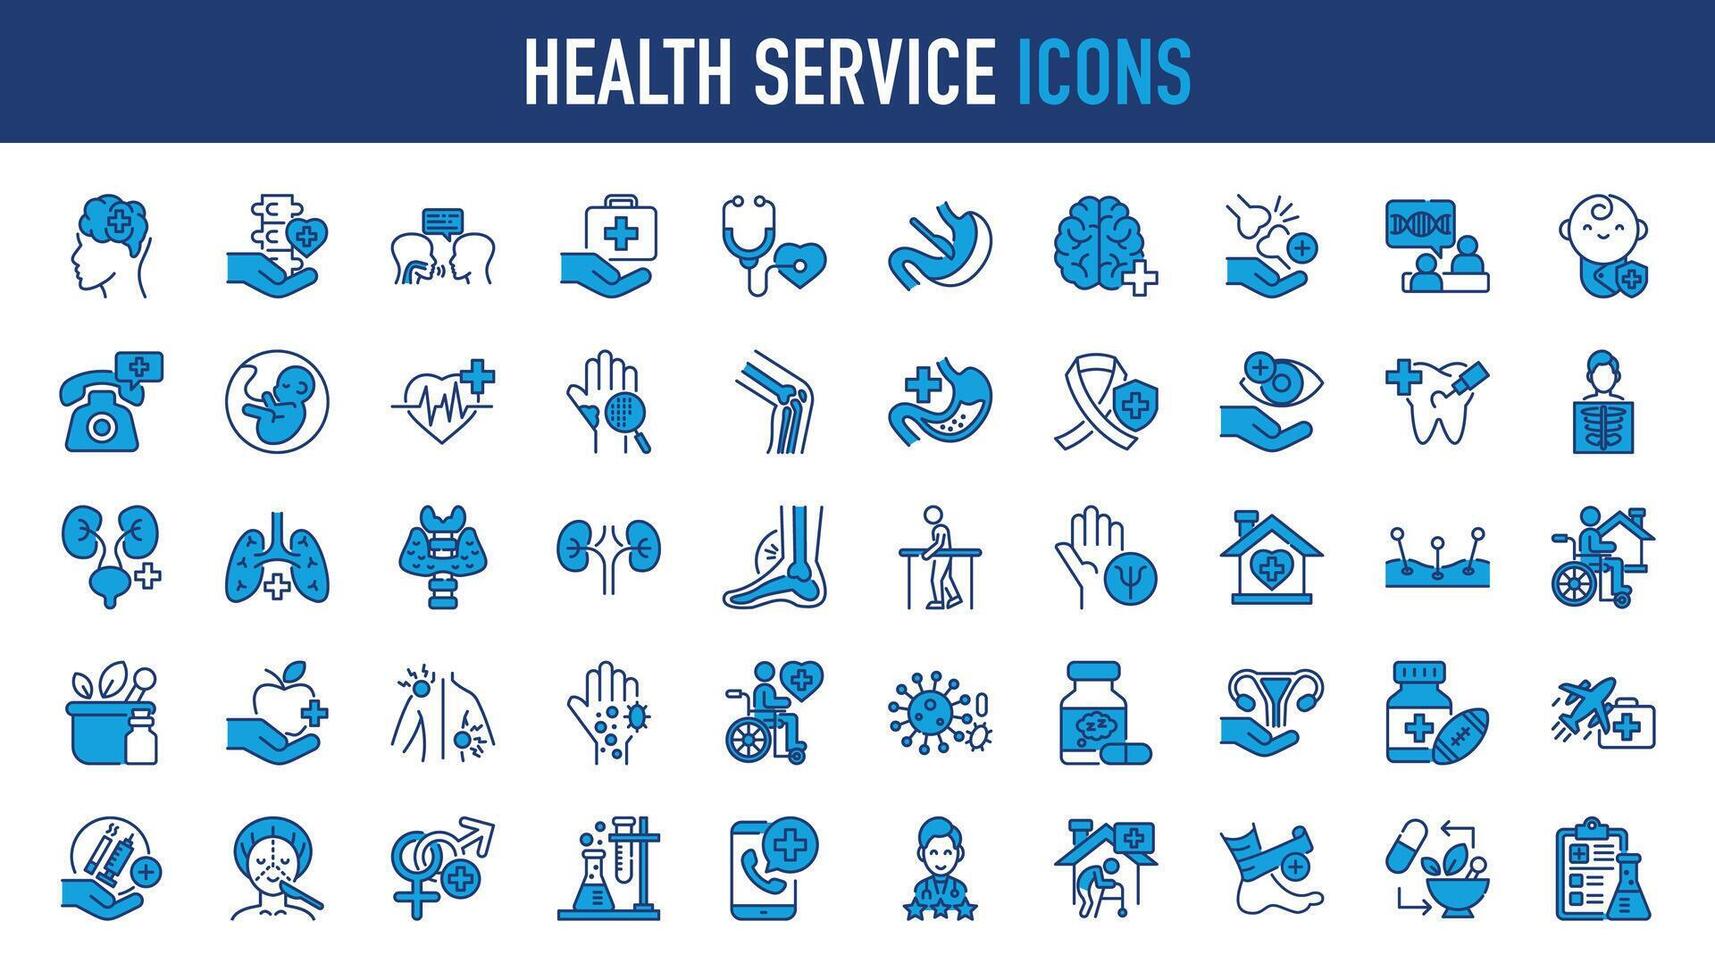 Gesundheit Bedienung Symbol Satz. enthält eine solche wie Arzt, Medizin, Krankenhaus, Behandlung, Gesundheitspflege, Krankenschwester, Pillen, Klinik und mehr. solide Vektor Symbole Sammlung.